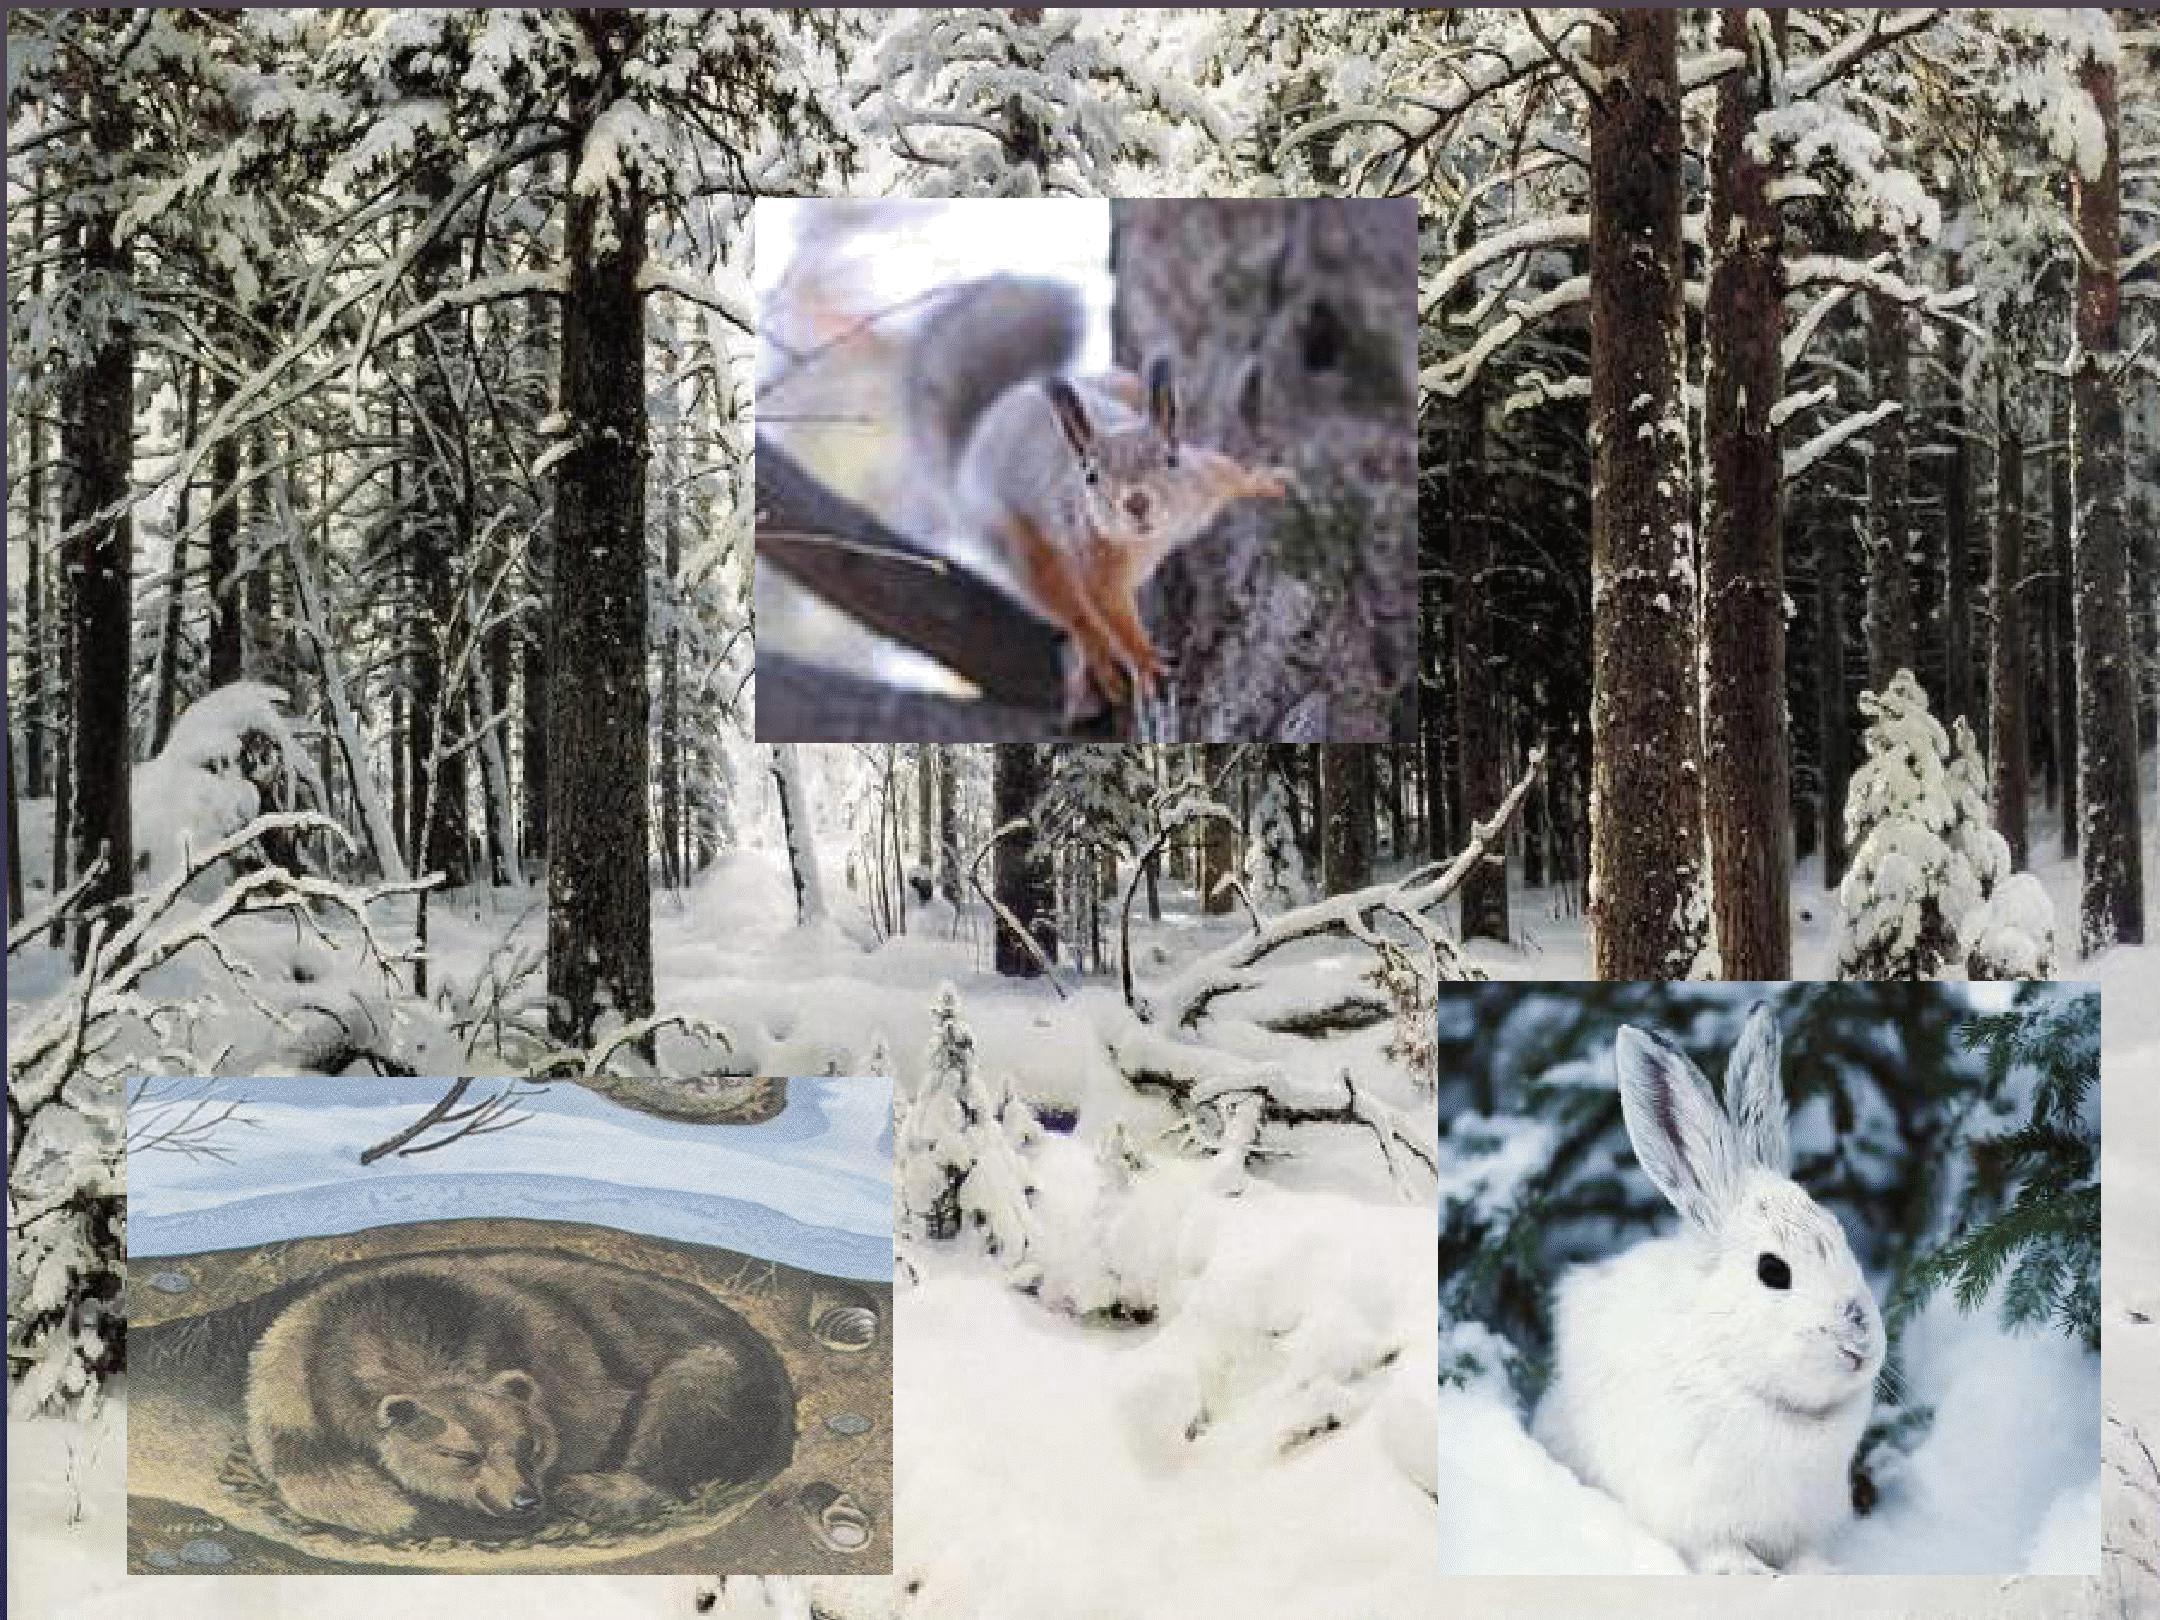 Изменения животных зимой 5 класс биология